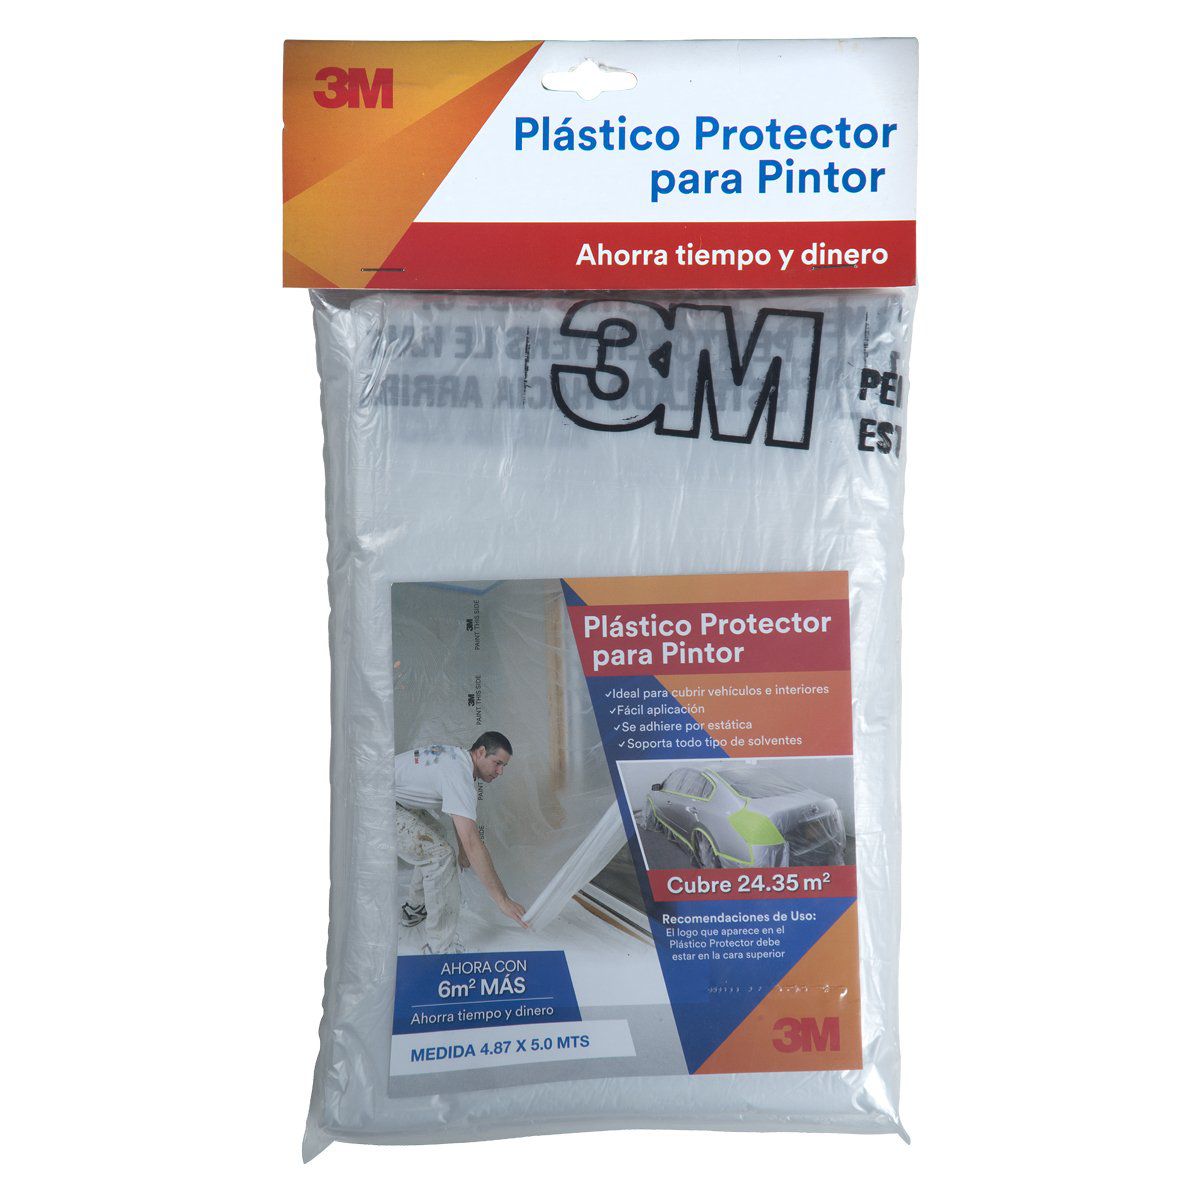 Plástico Protector para Pintor 3M - 4.87m x 5m - FerrisariatoFerrisariato